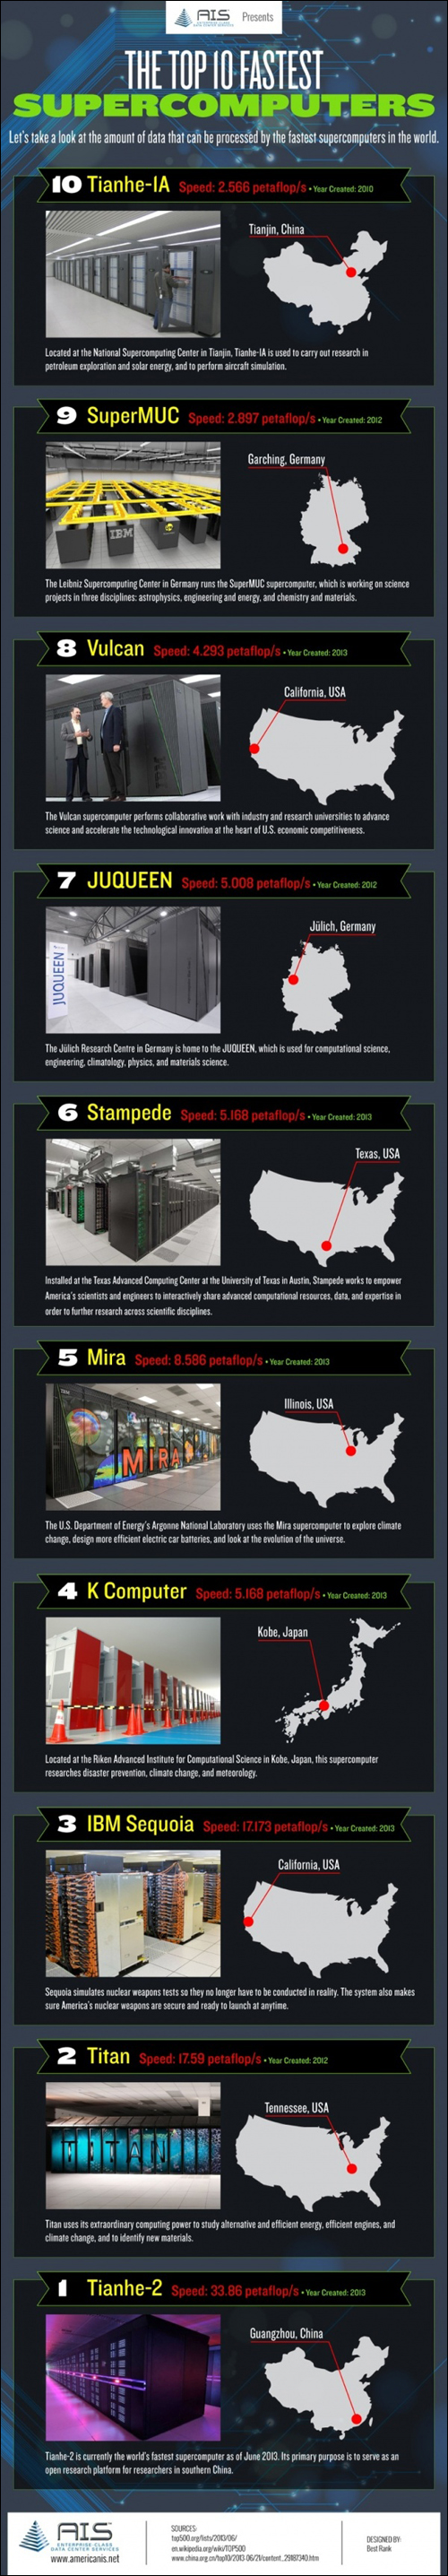 supercomputer-top10